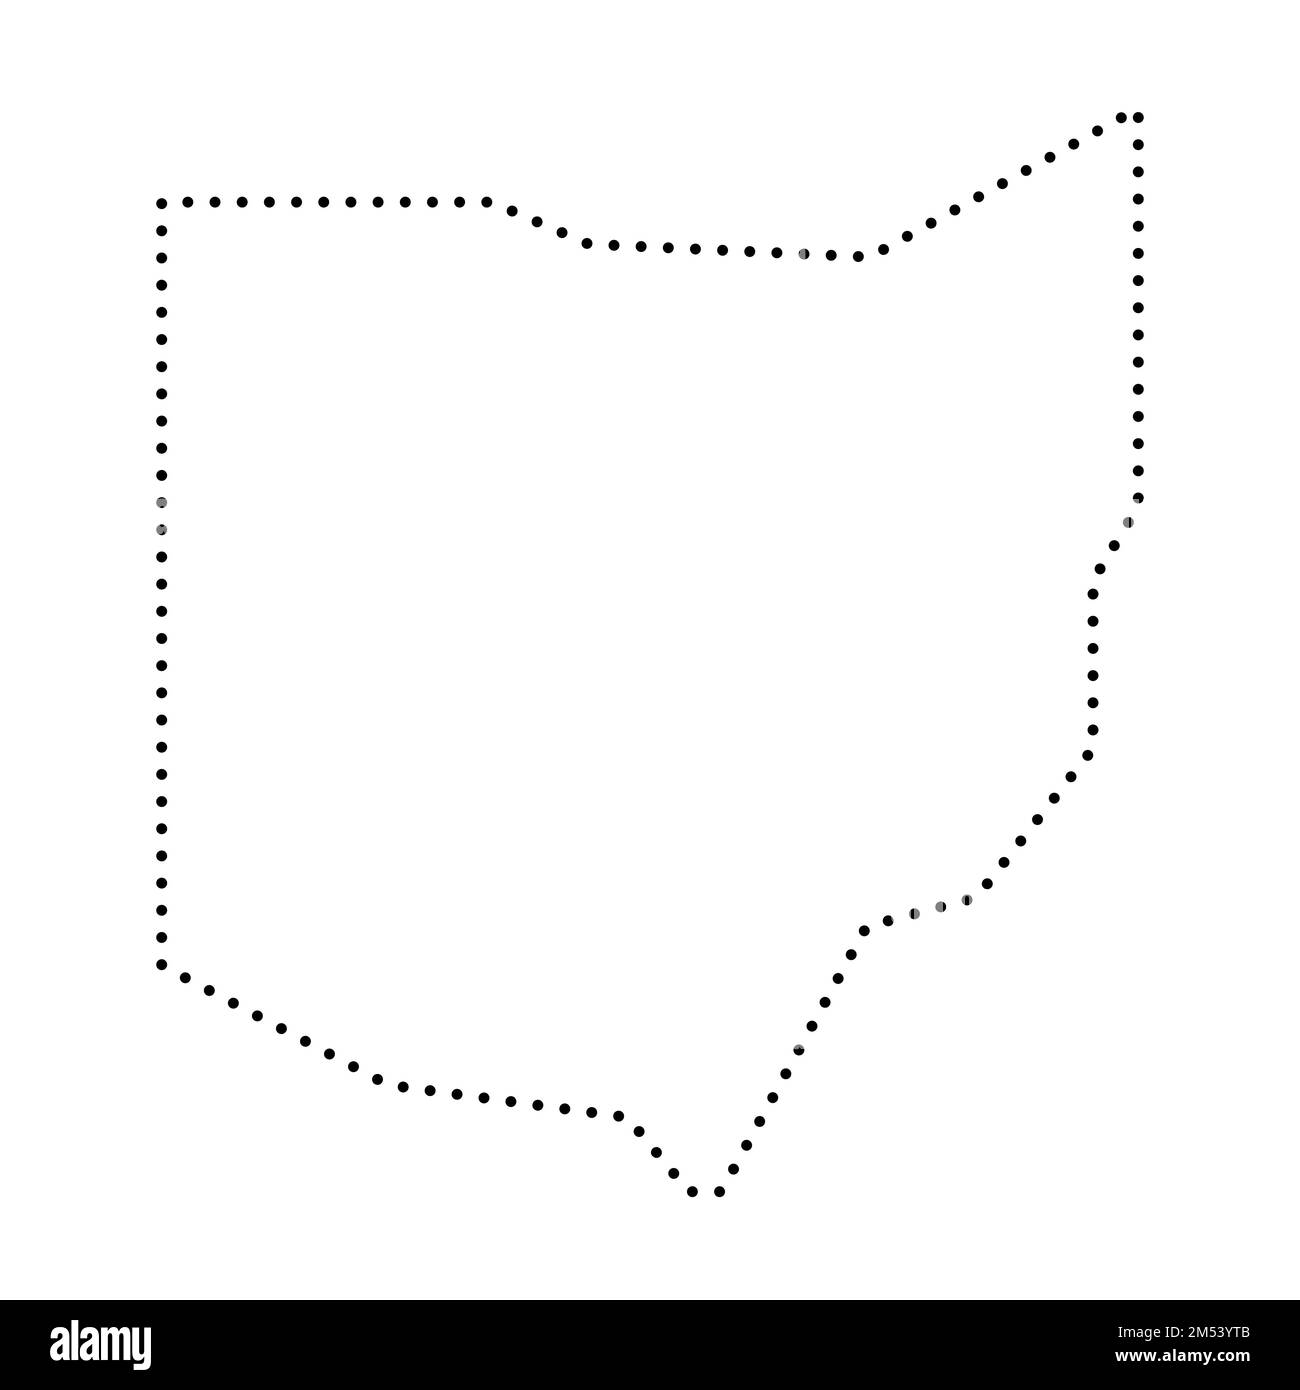 Ohio, États-Unis d'Amérique, États-Unis. Carte simplifiée des contours noirs épais. Illustration simple à vecteur plat Illustration de Vecteur